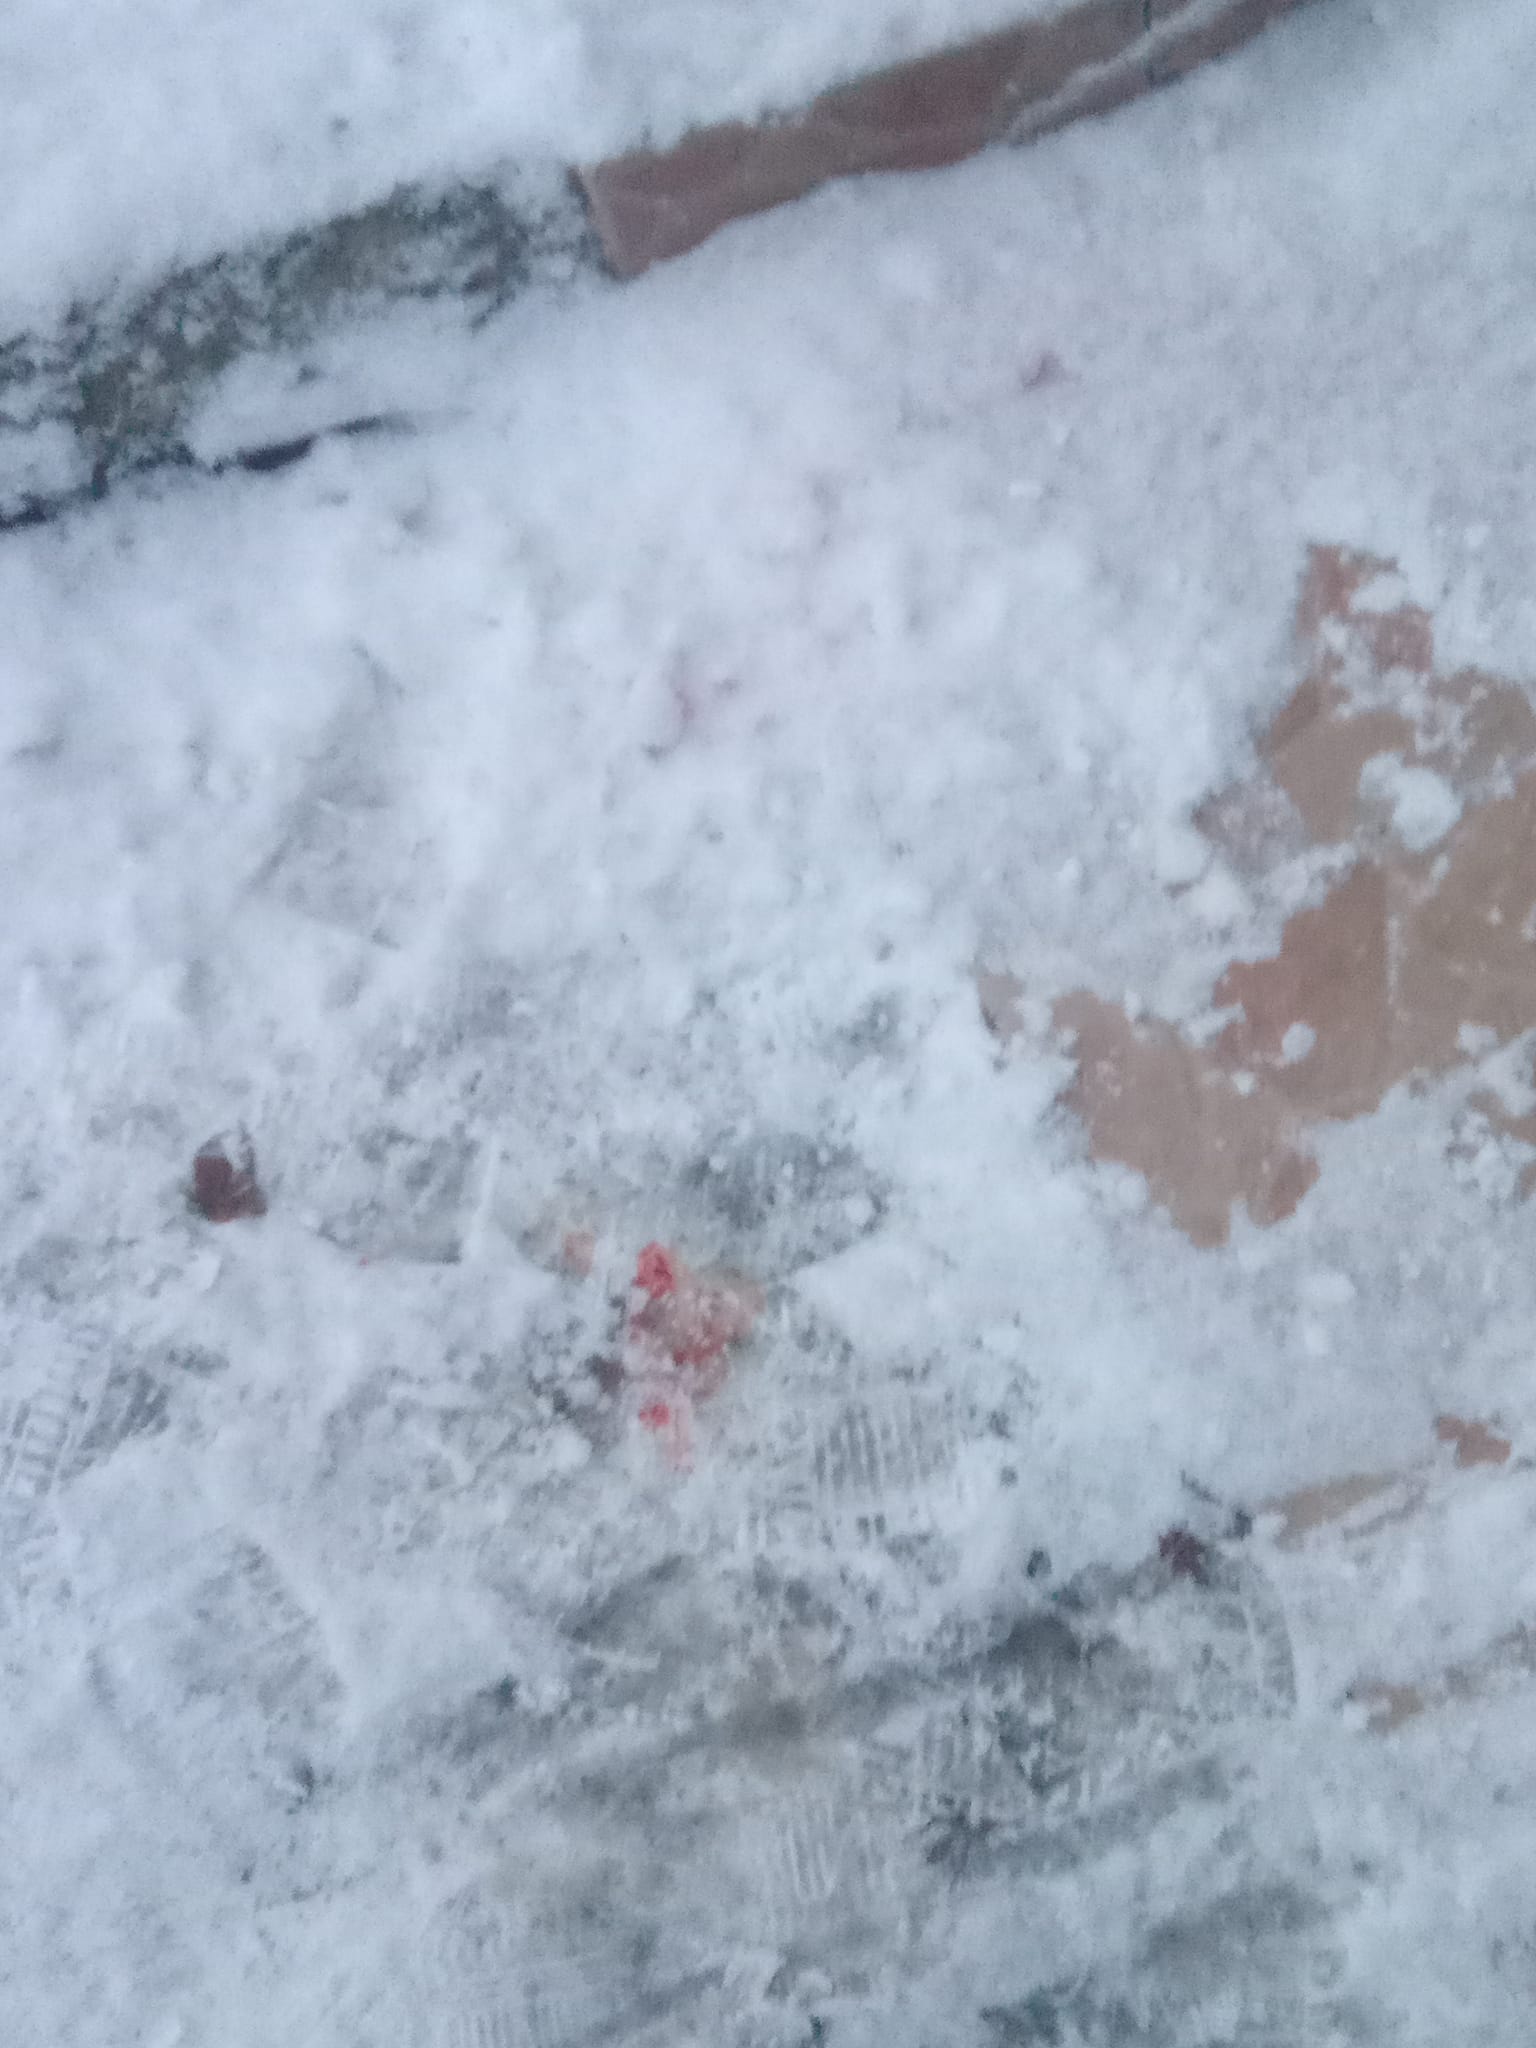 Надзвичайний випадок стався на зледенілих, нечищених від снігу  сходах амбулаторії сімейної медицини №5, вулиця Челюскінців,10  в  Ужгороді.